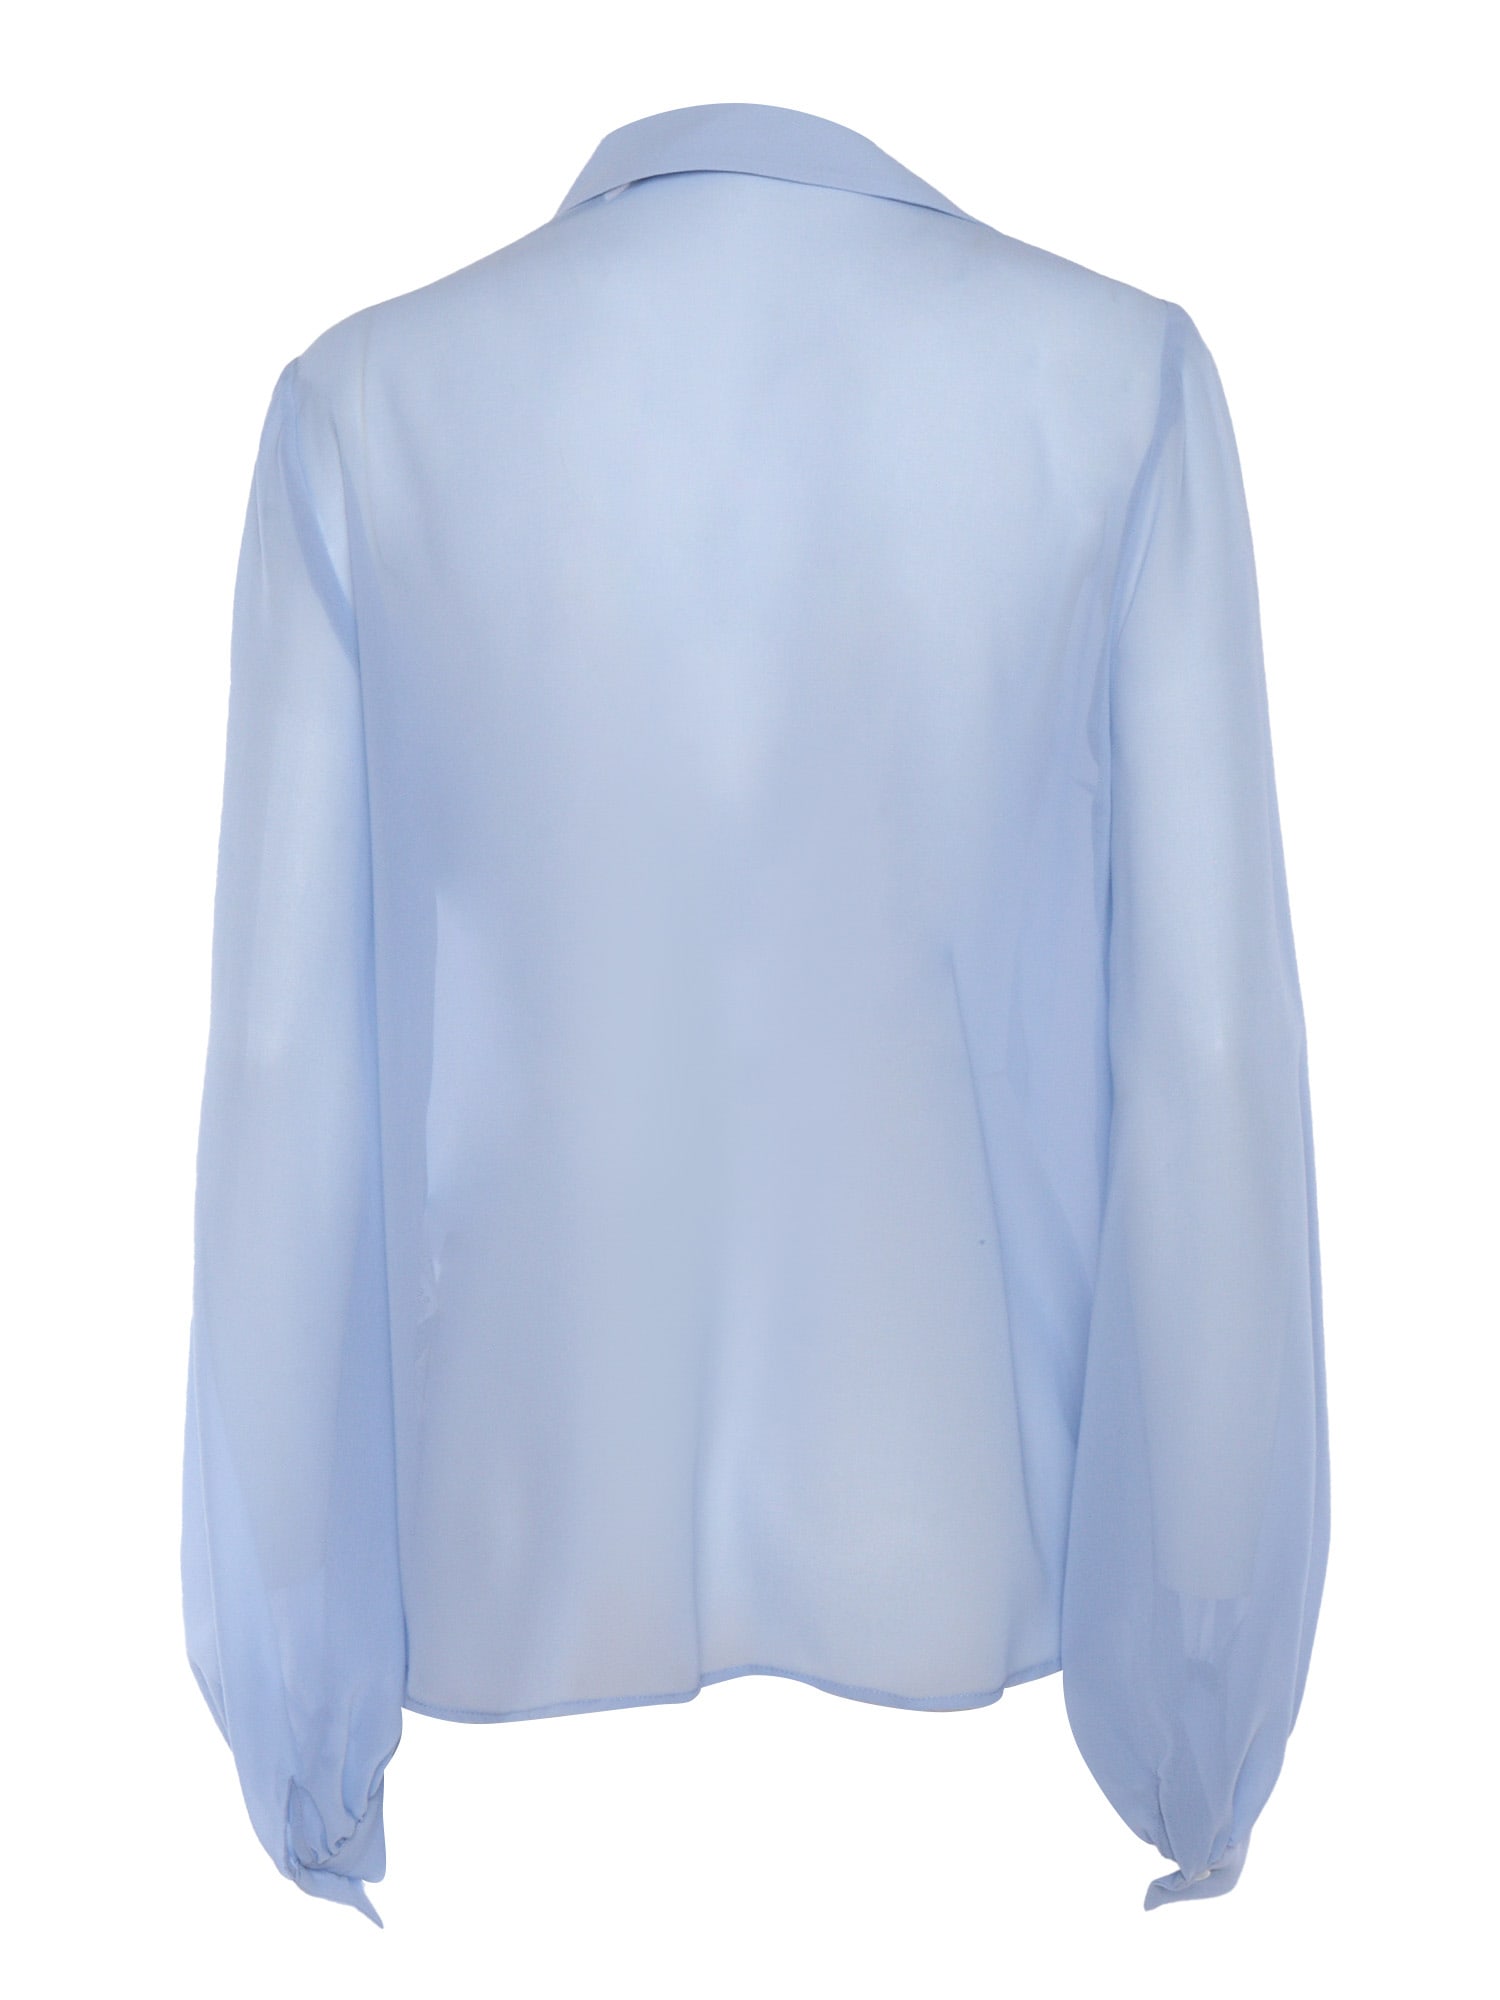 Shop P.a.r.o.s.h Light Blue Shirt With Lace